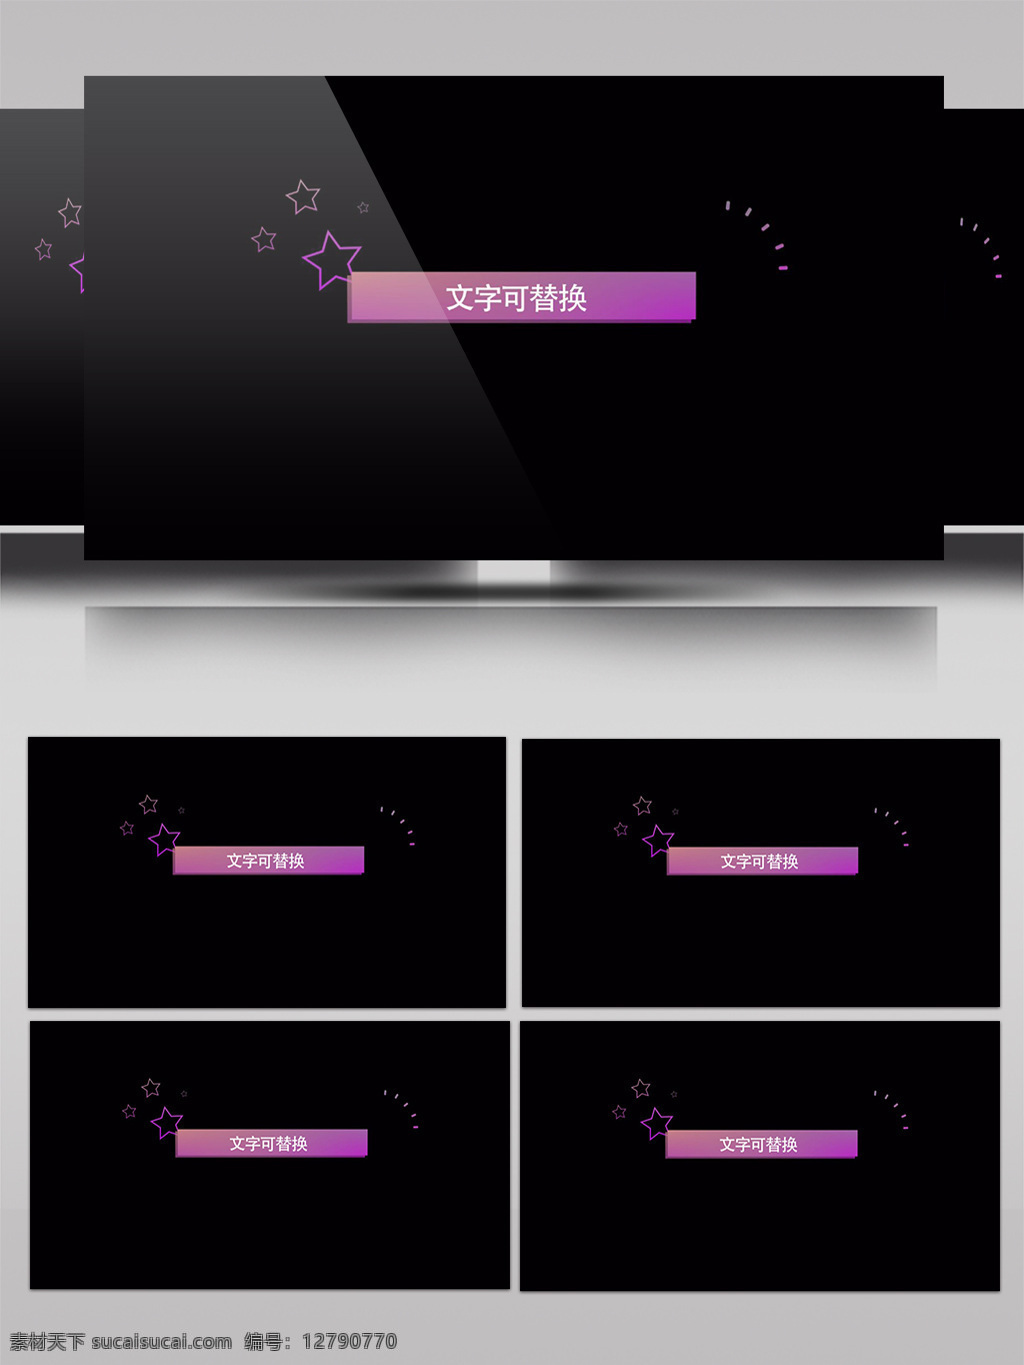 紫色 字幕 条 视频 特效 五角星 长方形 渐变色 简约 小清新 文字 白色 黑色 替换